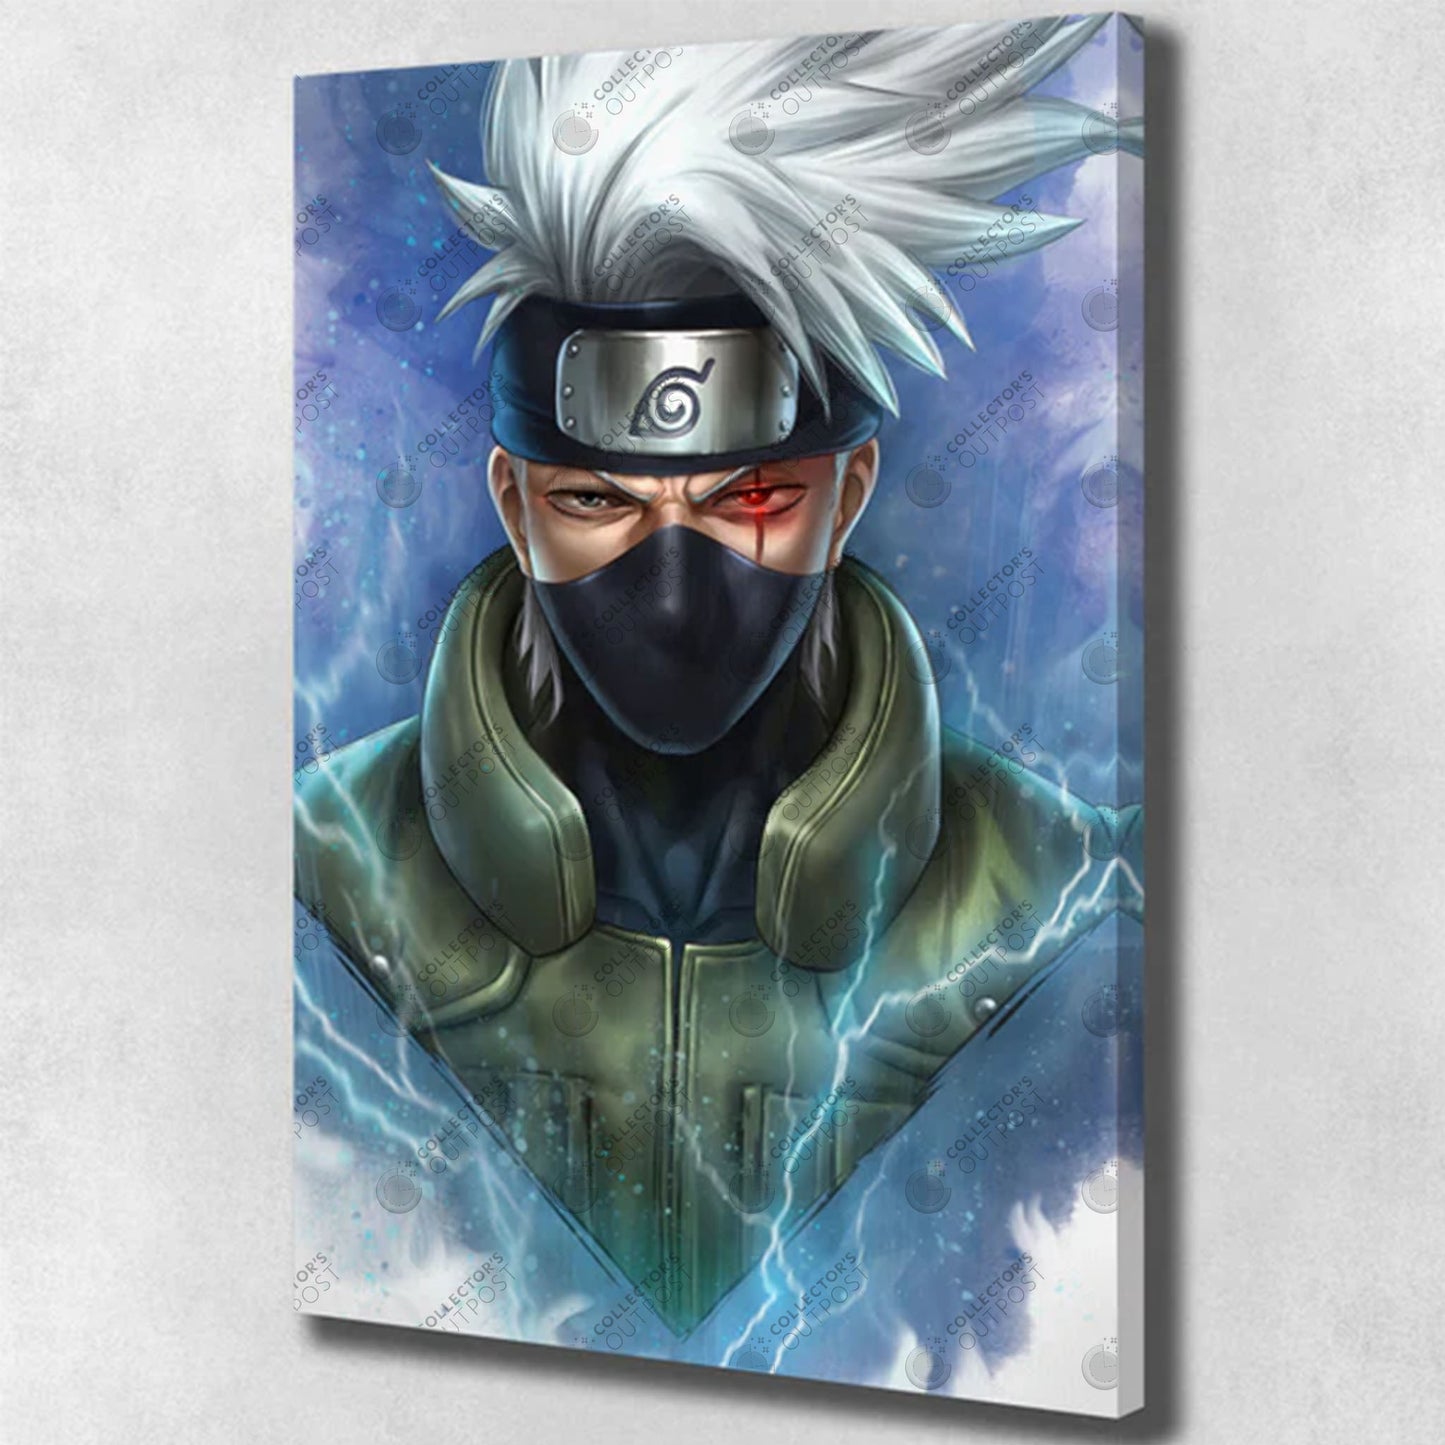 Kakashi (Naruto) "Lightning Mentor" Legacy Premium Art Print